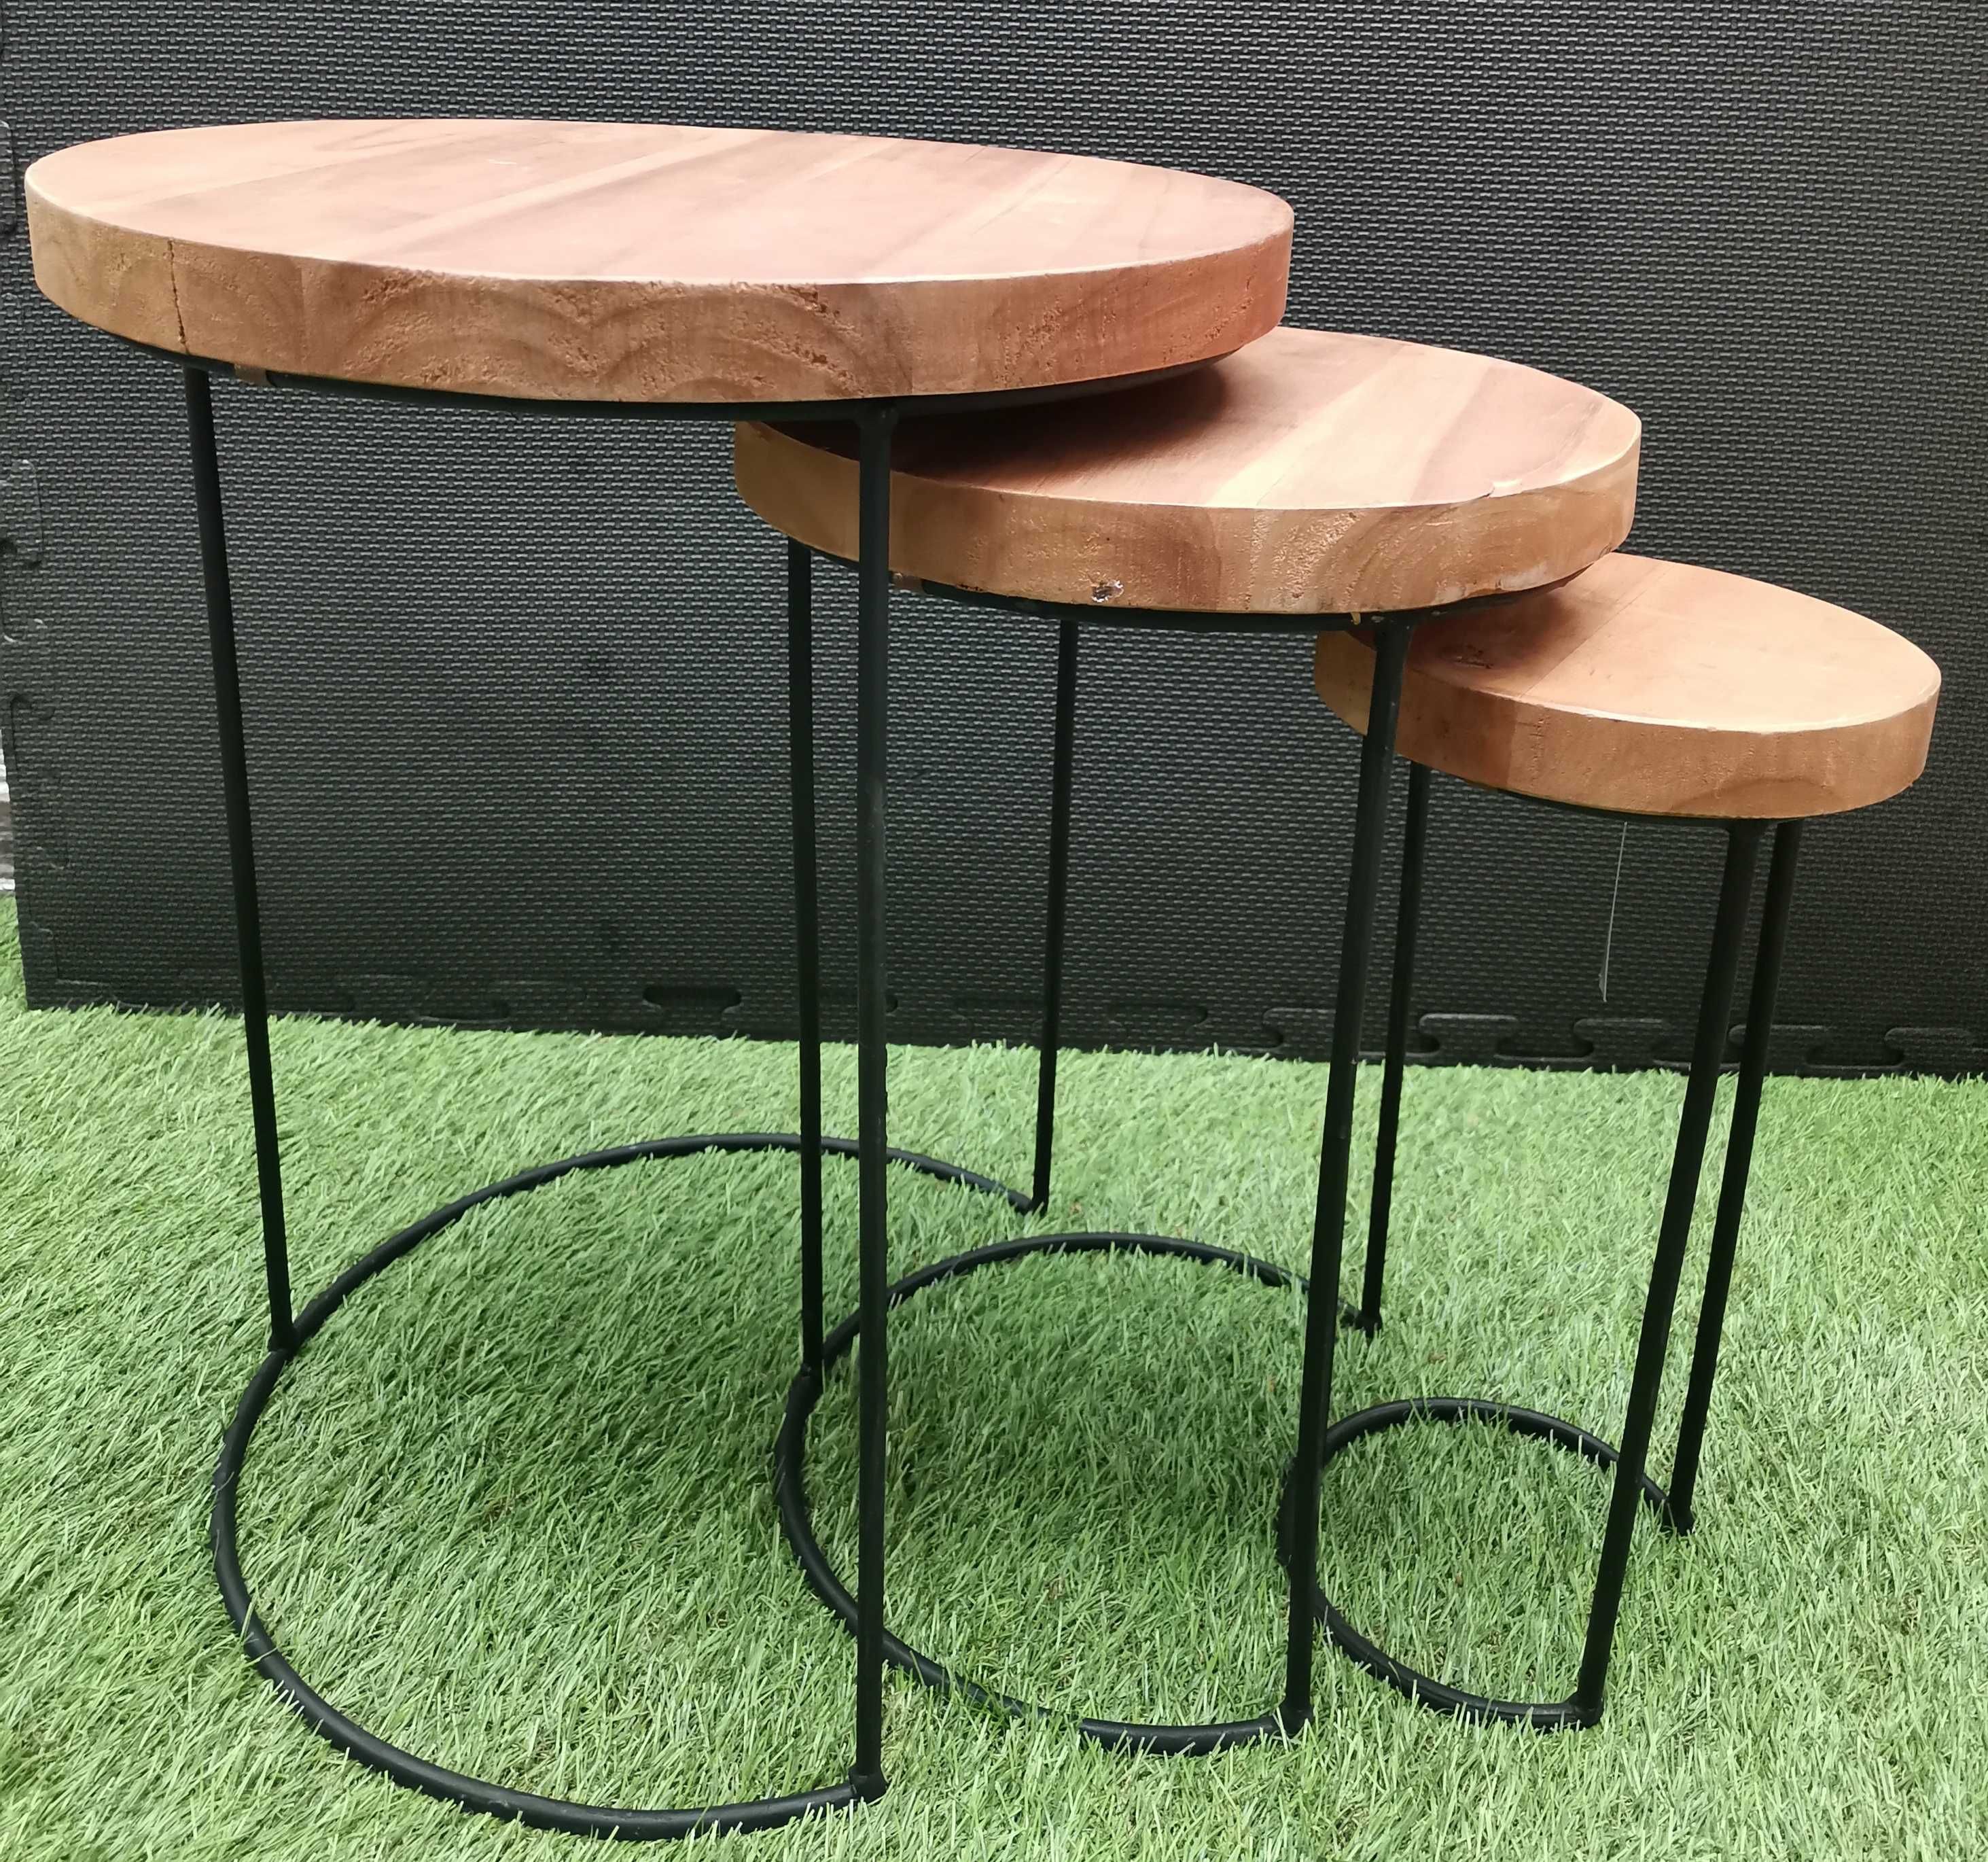 Stolik boczny 3 częściowy z drewna Tekowego i metalu kawowy piekny